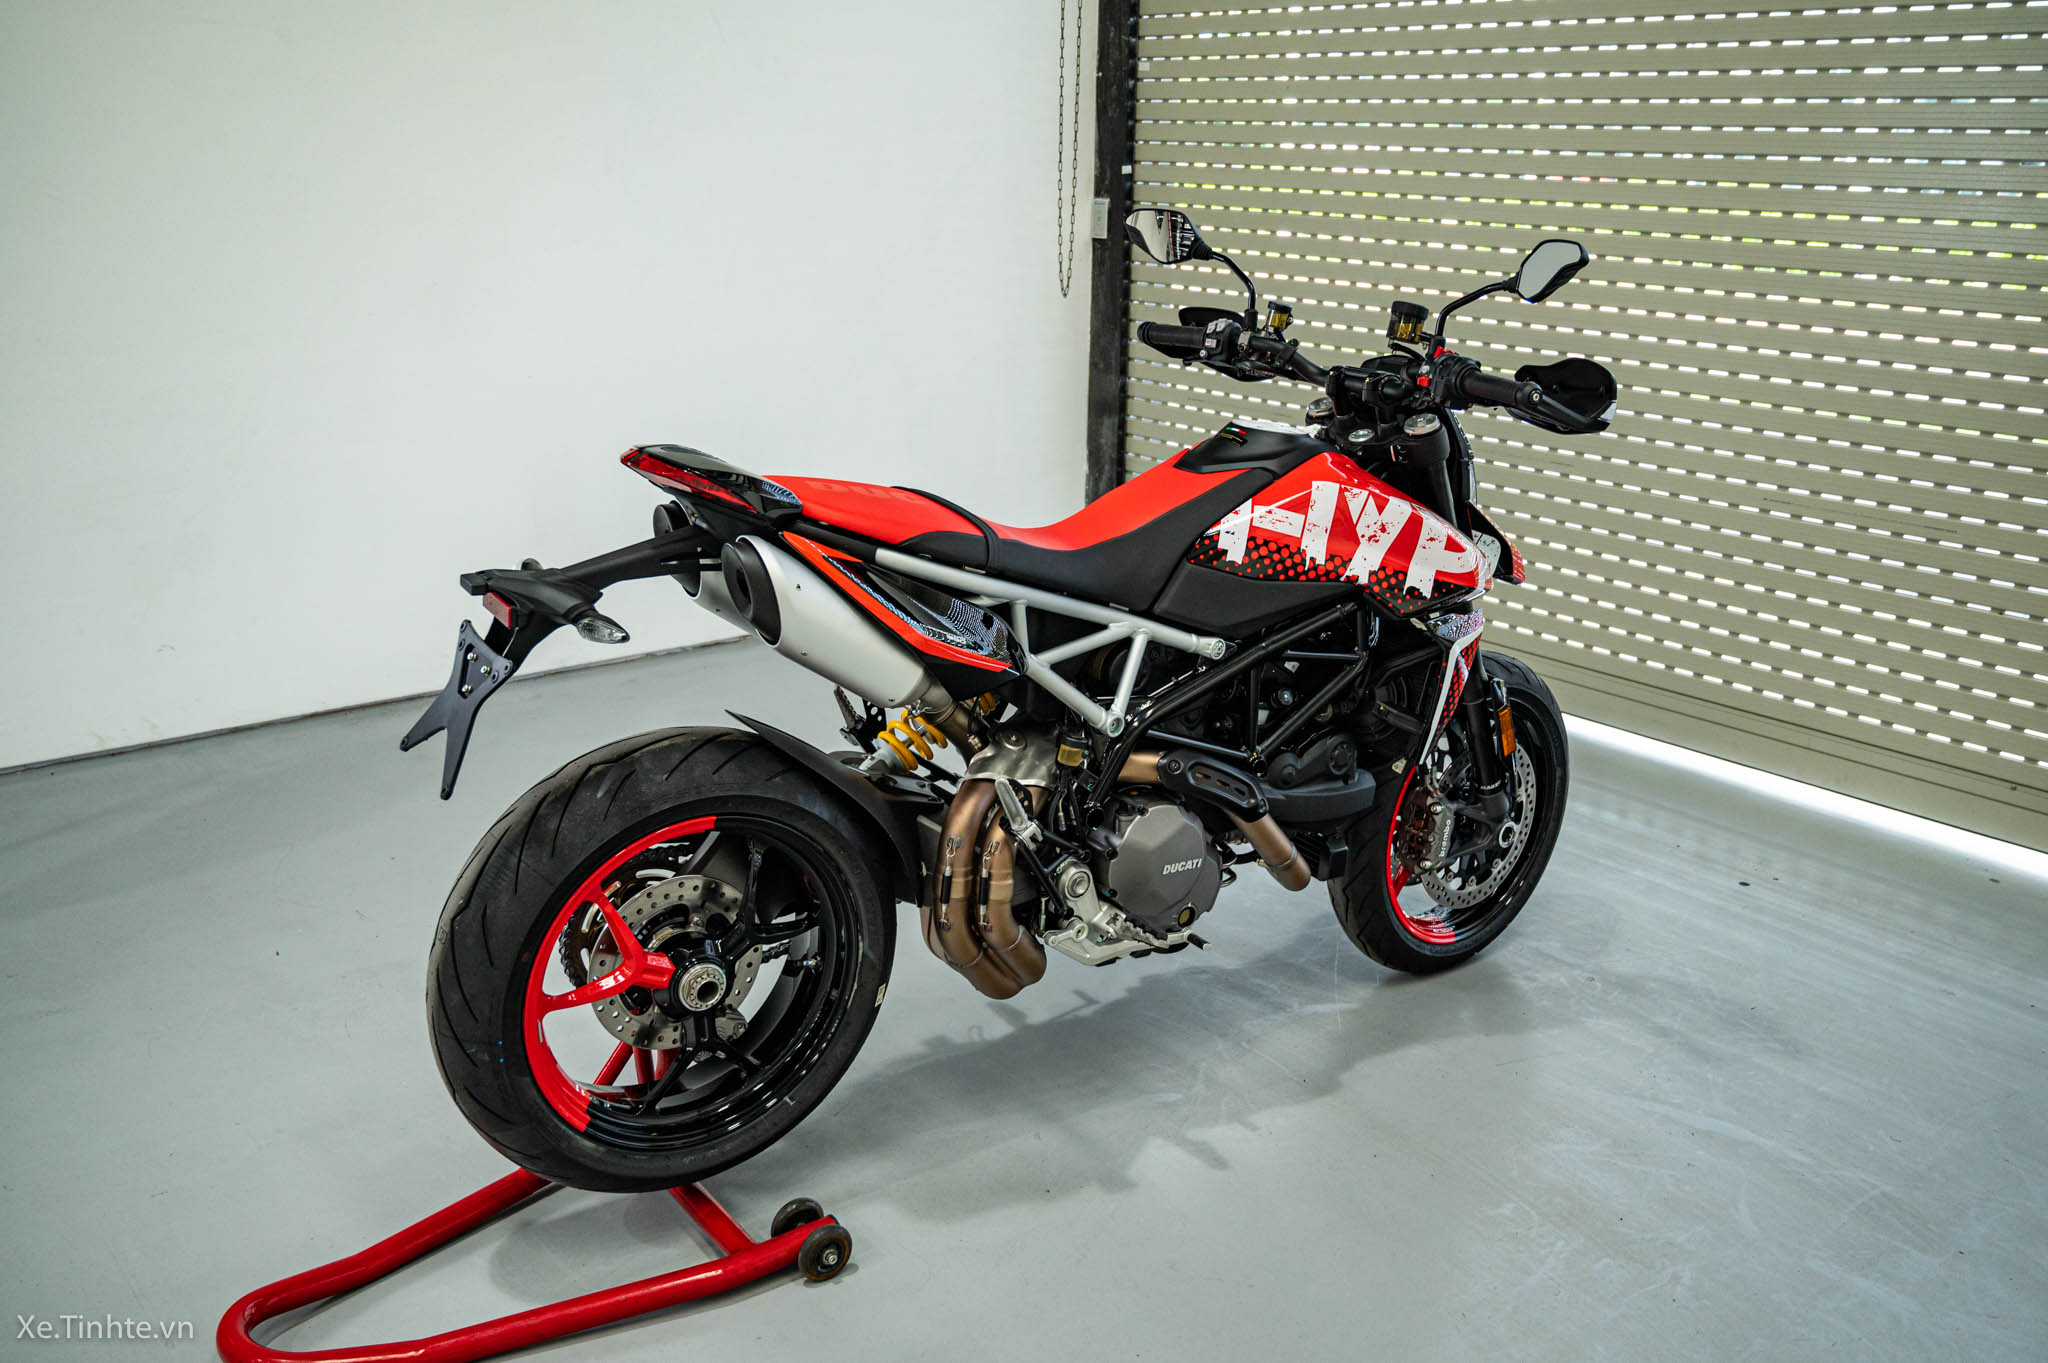 Ducati Hypermotard 950 2019 sắp về Việt Nam giá dự kiến 460 triệu